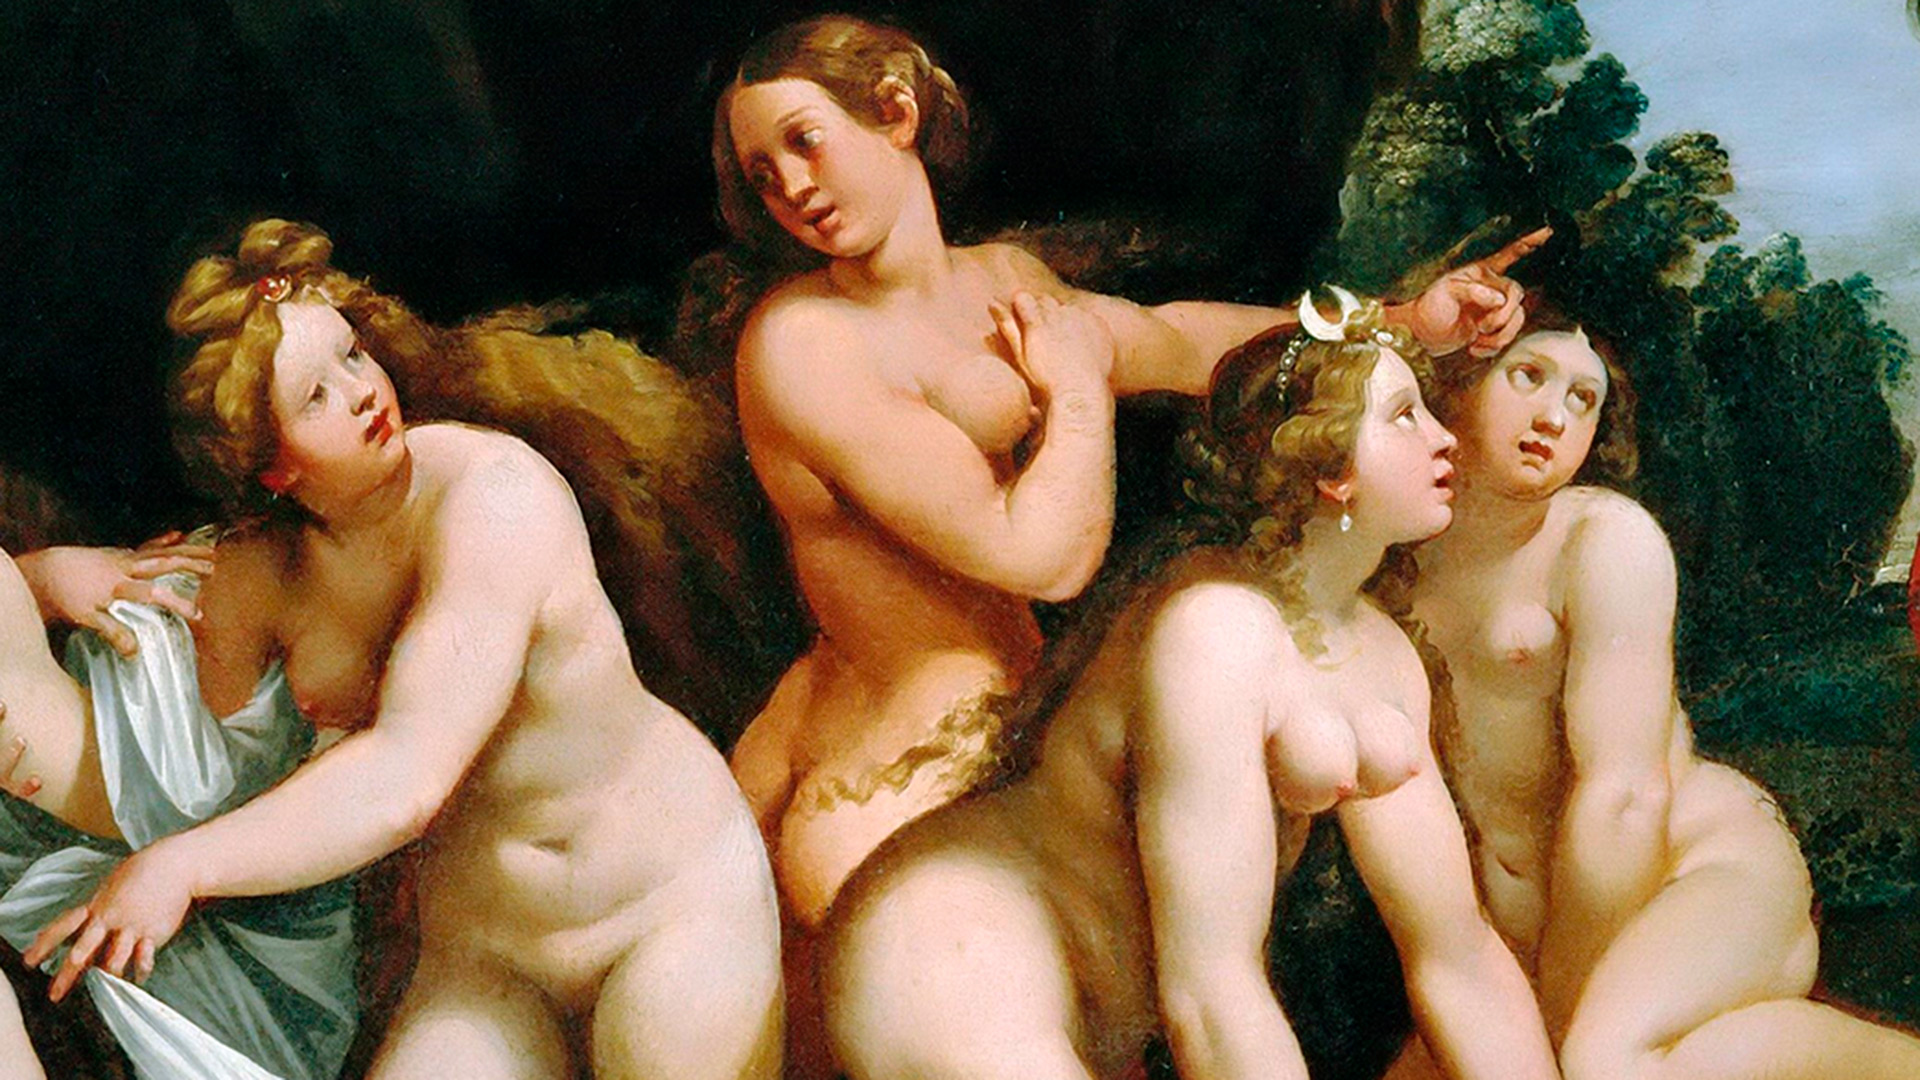 Un cuadro renacentista con mujeres desnudas recrudece la crisis de  violencia en Francia - Infobae